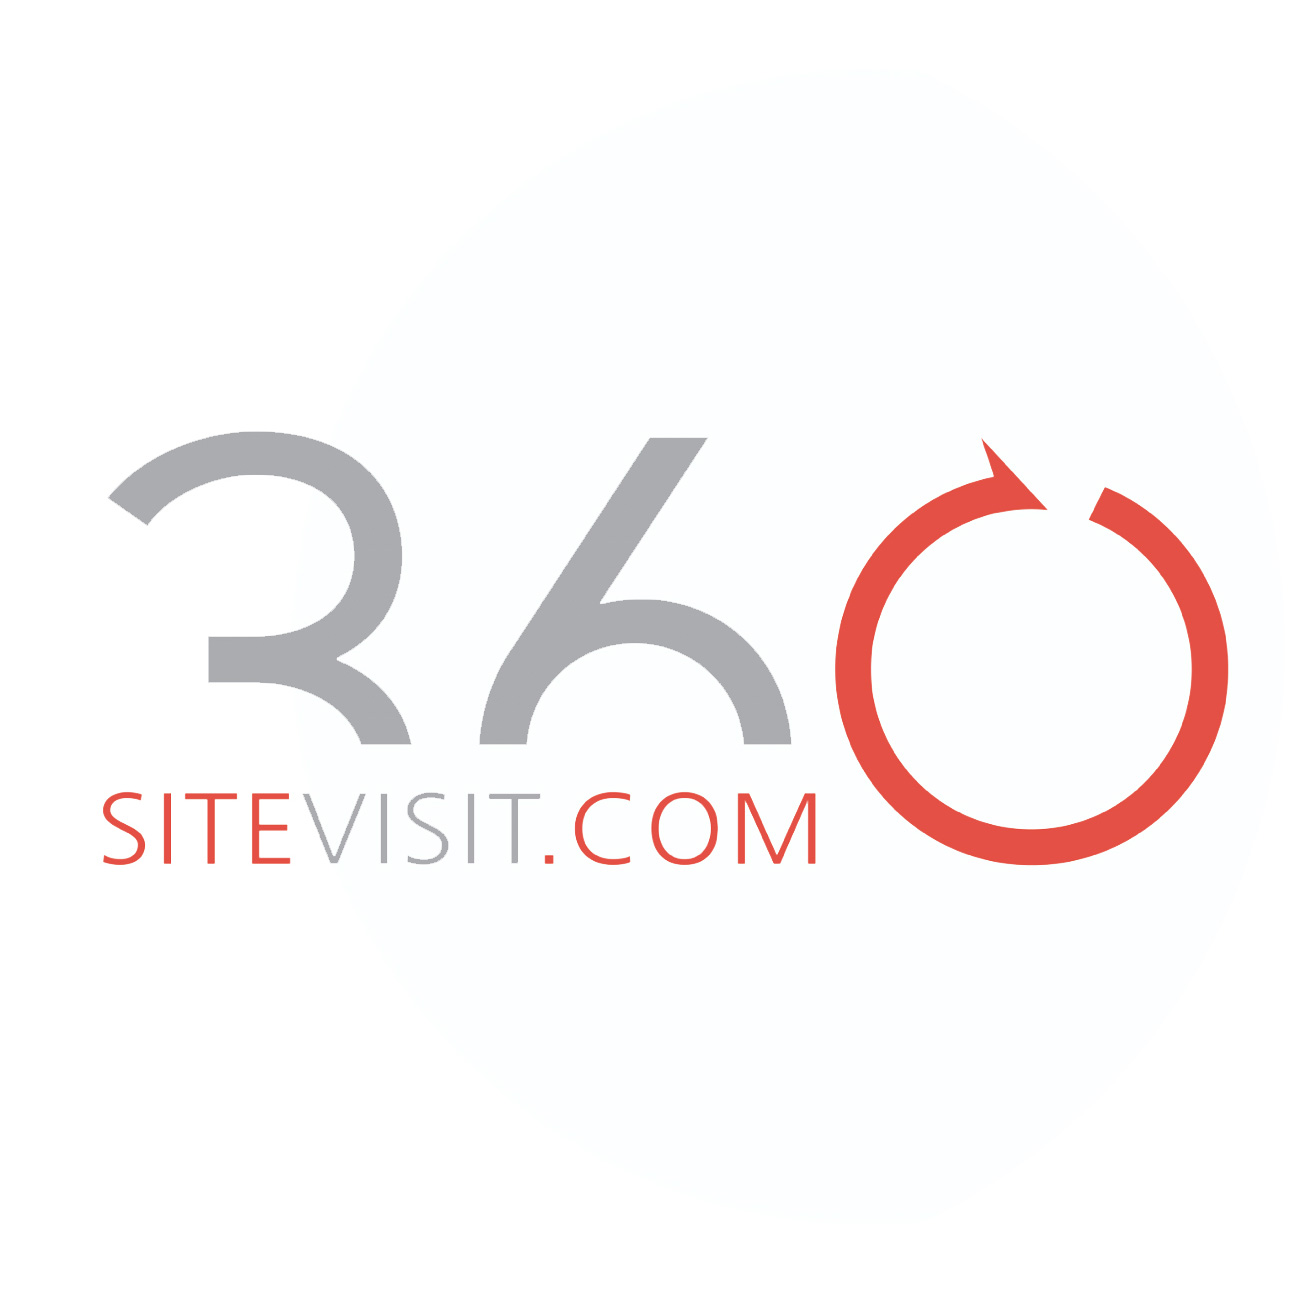 360 site visit